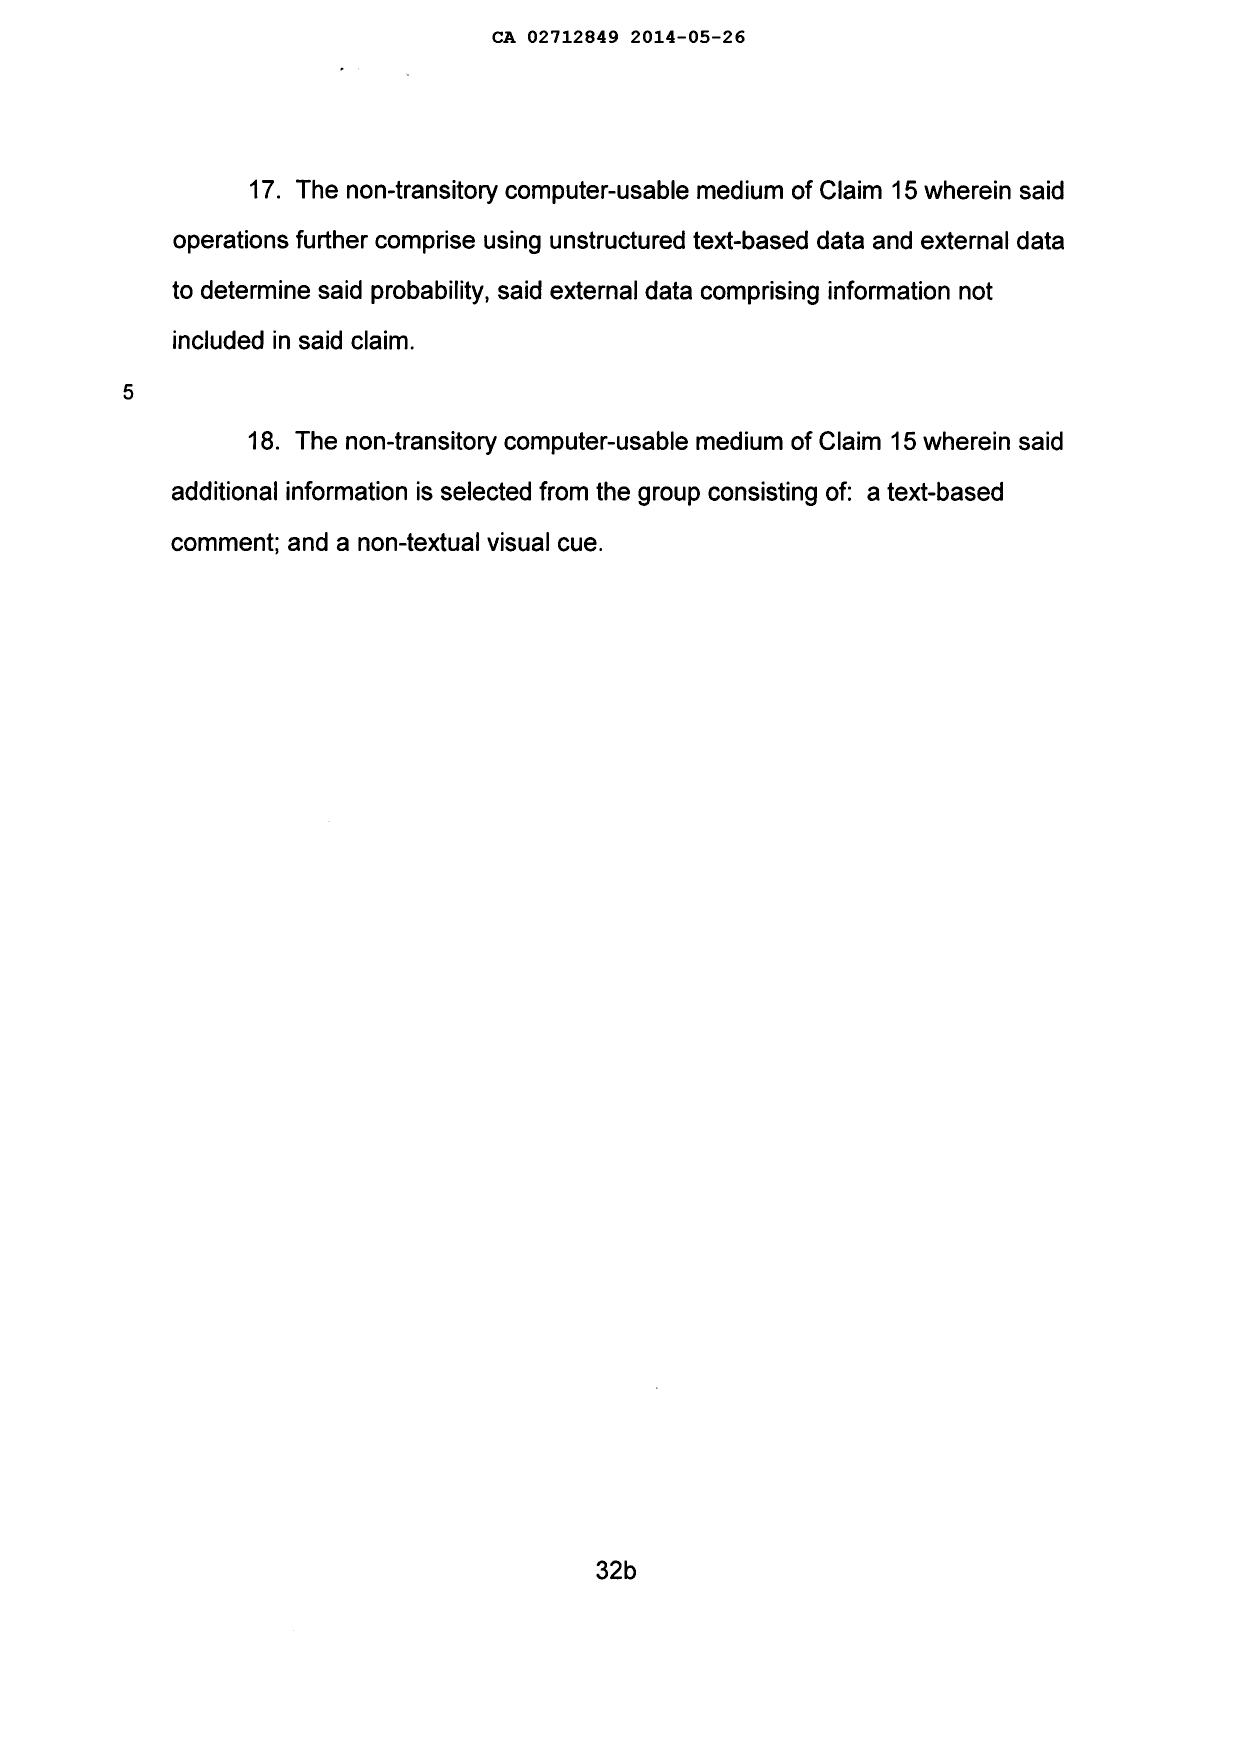 Document de brevet canadien 2712849. Poursuite-Amendment 20131226. Image 14 de 14